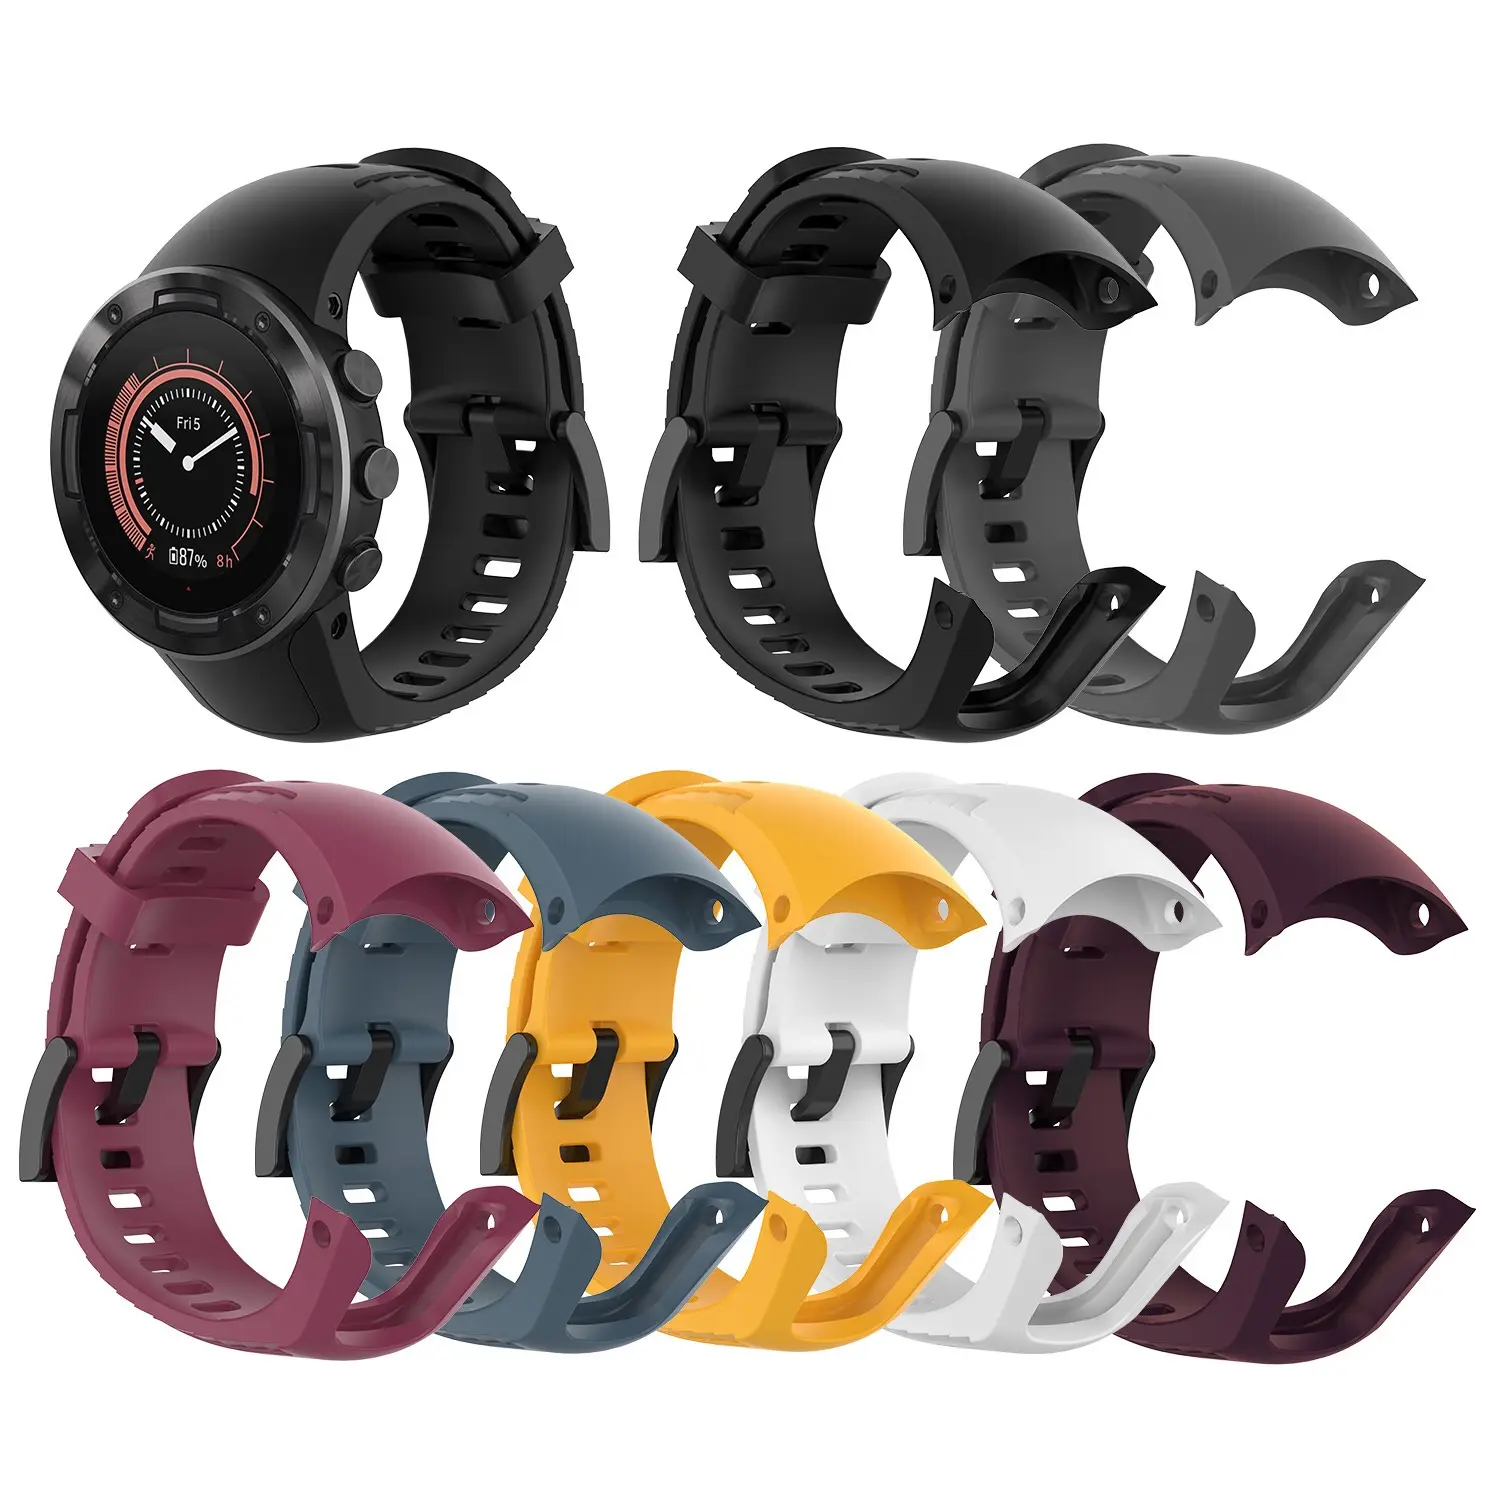 सिलिकॉन रबर के लिए समायोज्य पट्टा Wristband प्रतिस्थापन SUUNTO 5 स्मार्ट घड़ी के साथ उपकरण